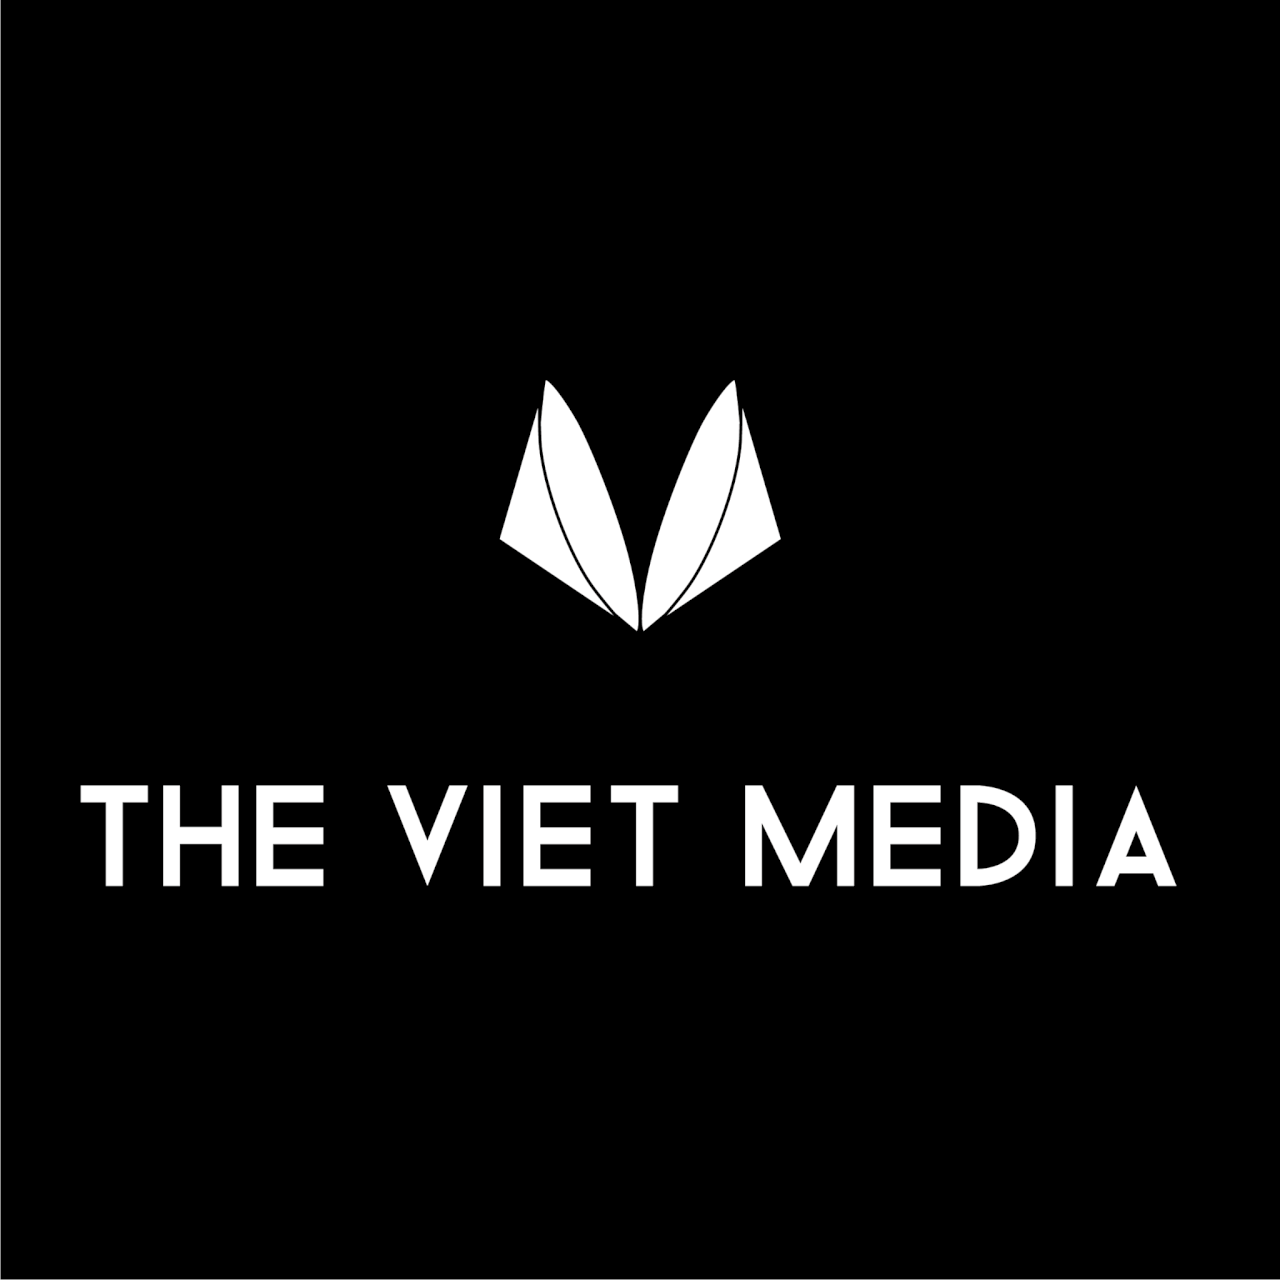 The Viet Media - hình ảnh Việt Nam khác với truyền thông chủ lưu (II)